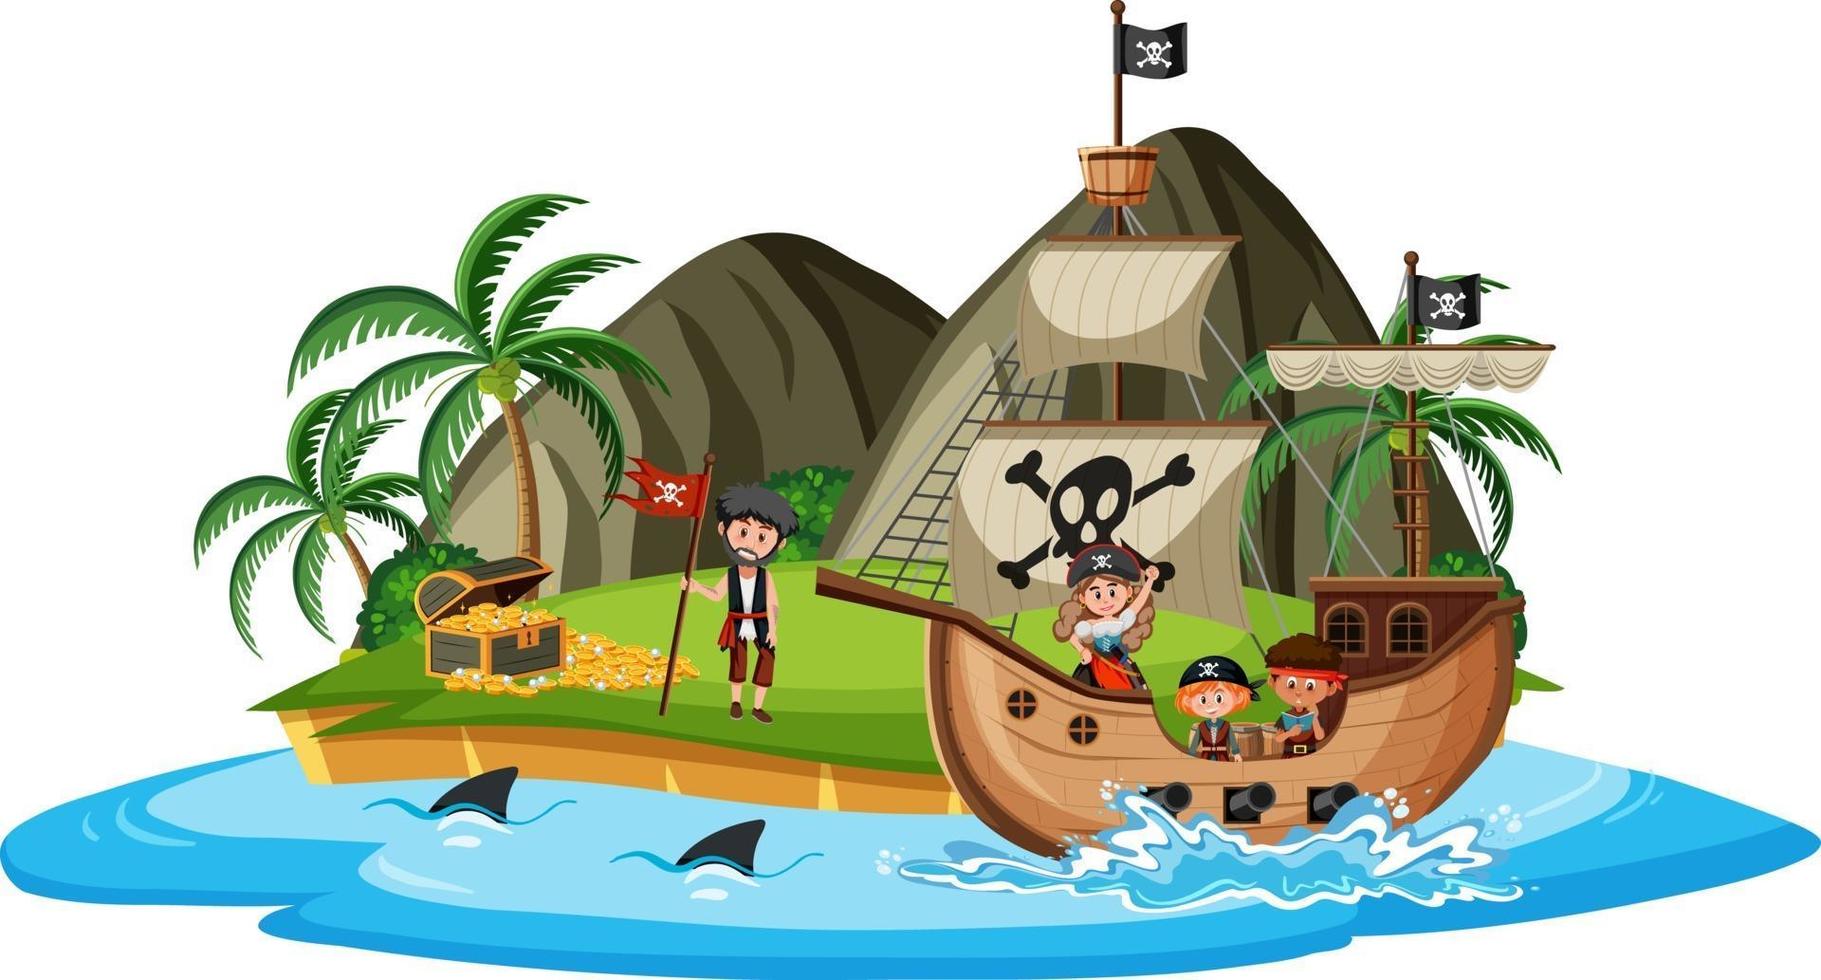 navio pirata na ilha com muitas crianças isoladas no fundo branco vetor